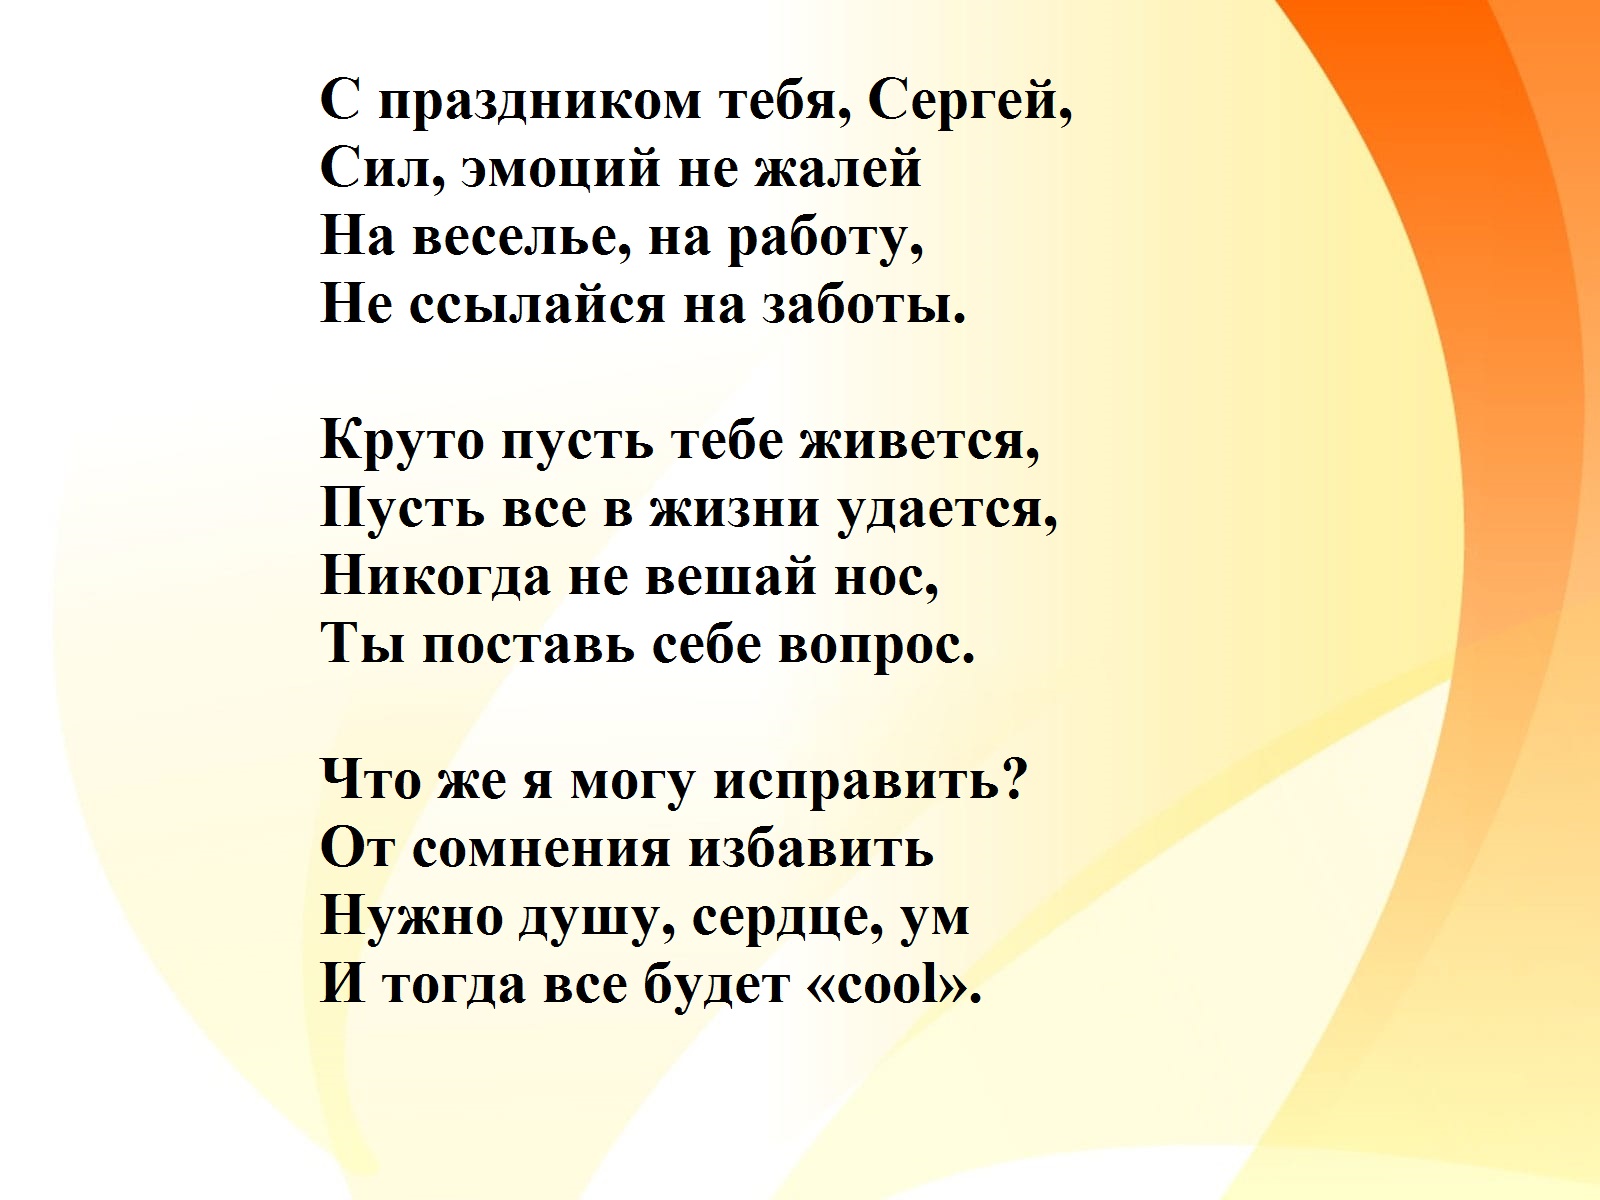 Красивые стихи сергею. Поздравления с днём рождения мужчине Сергею. Поздравление с днём рождения мужчине Сергею в стихах.